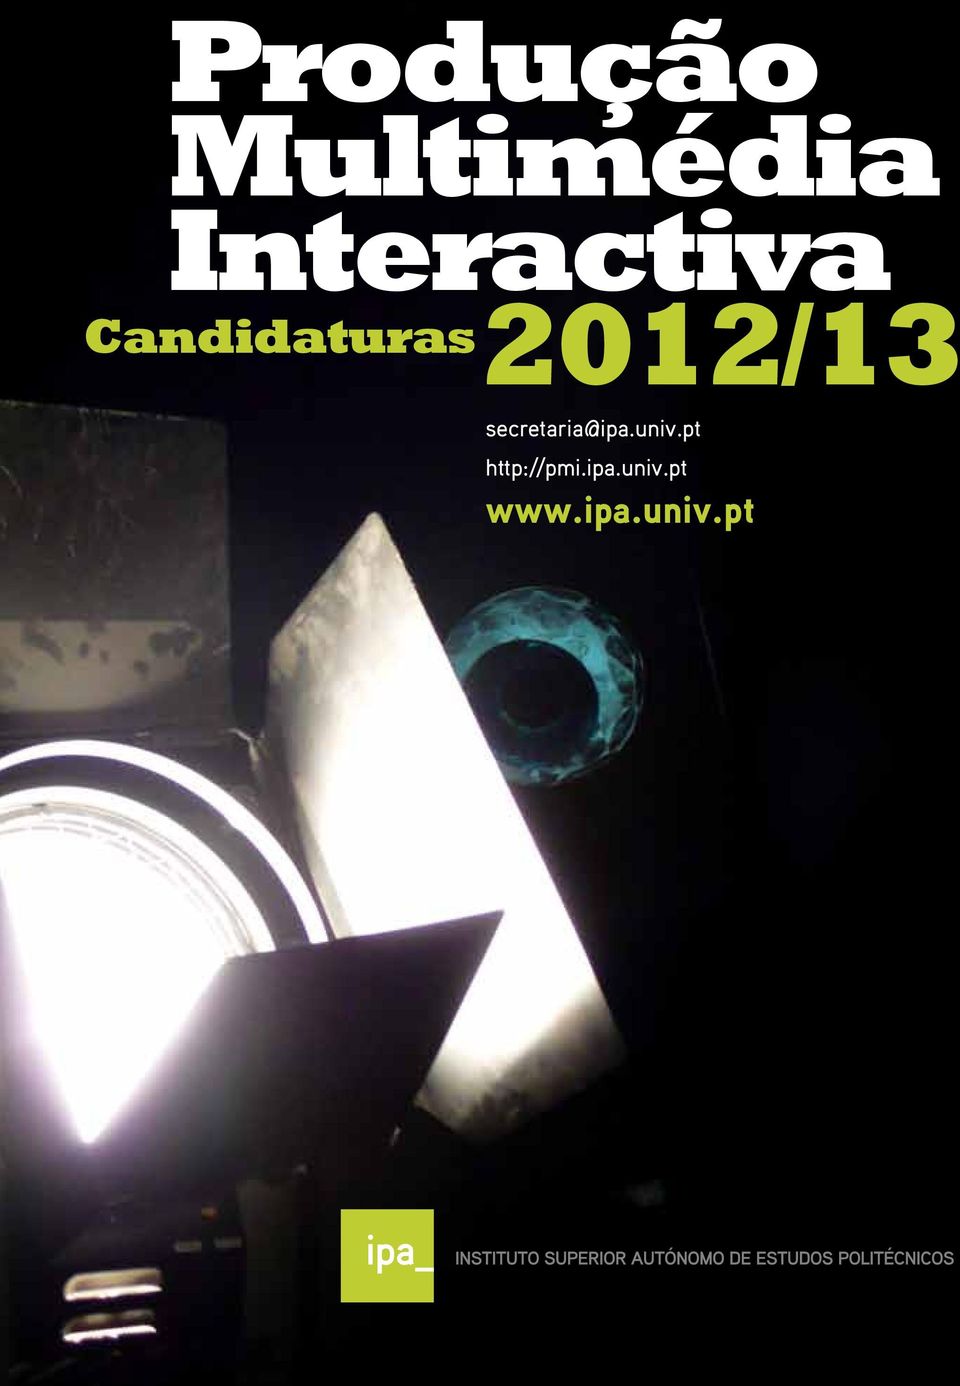 2012/13 secretaria@ipa.univ.